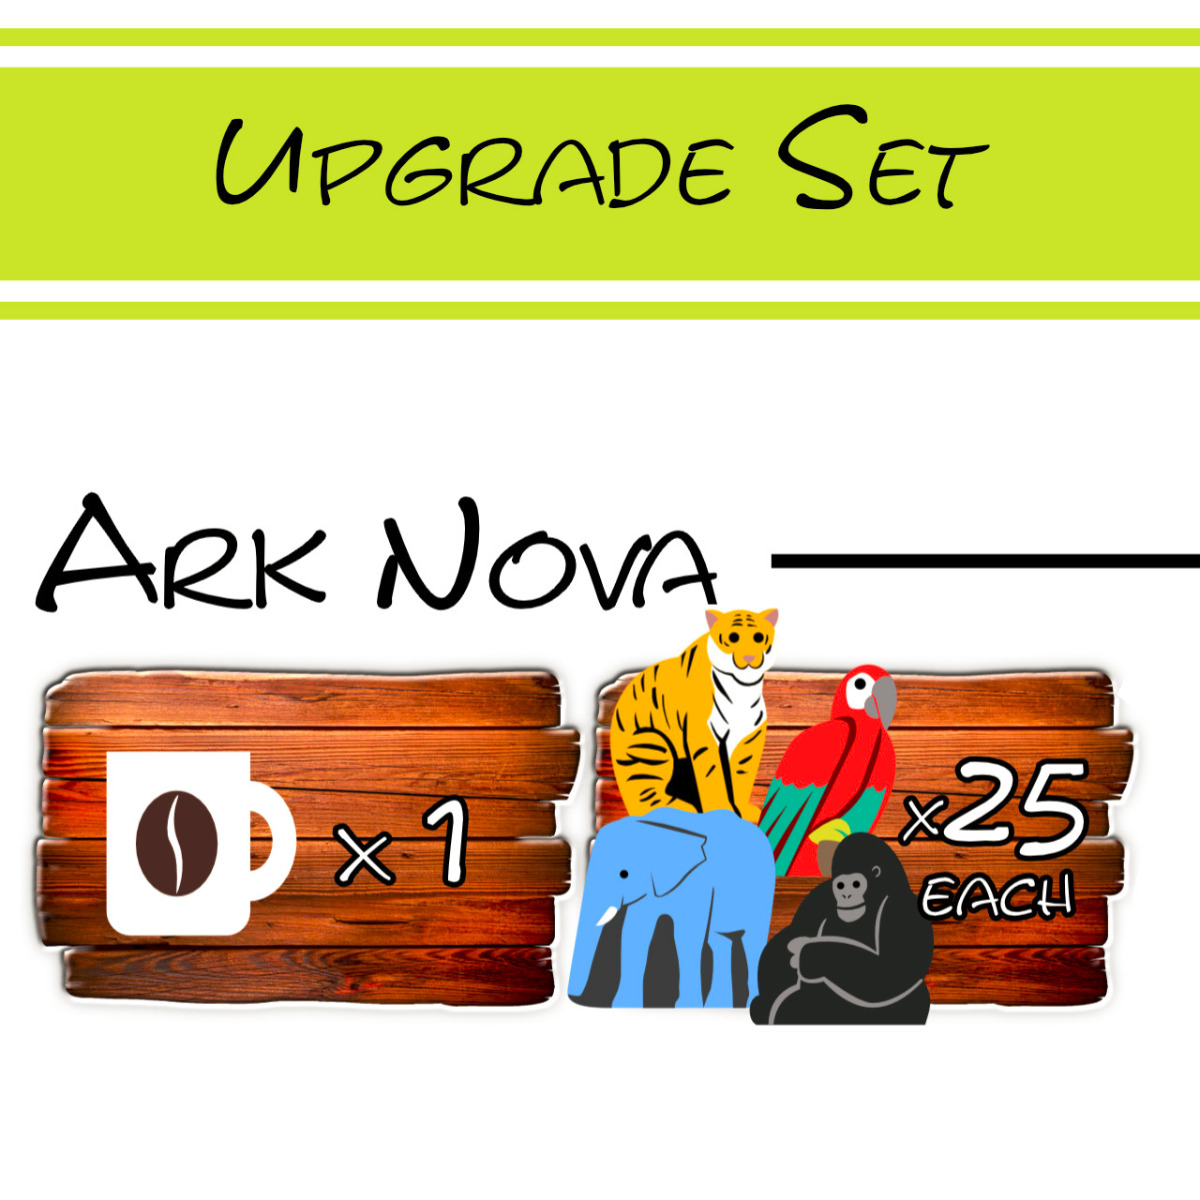 Upgrade Ark Nova